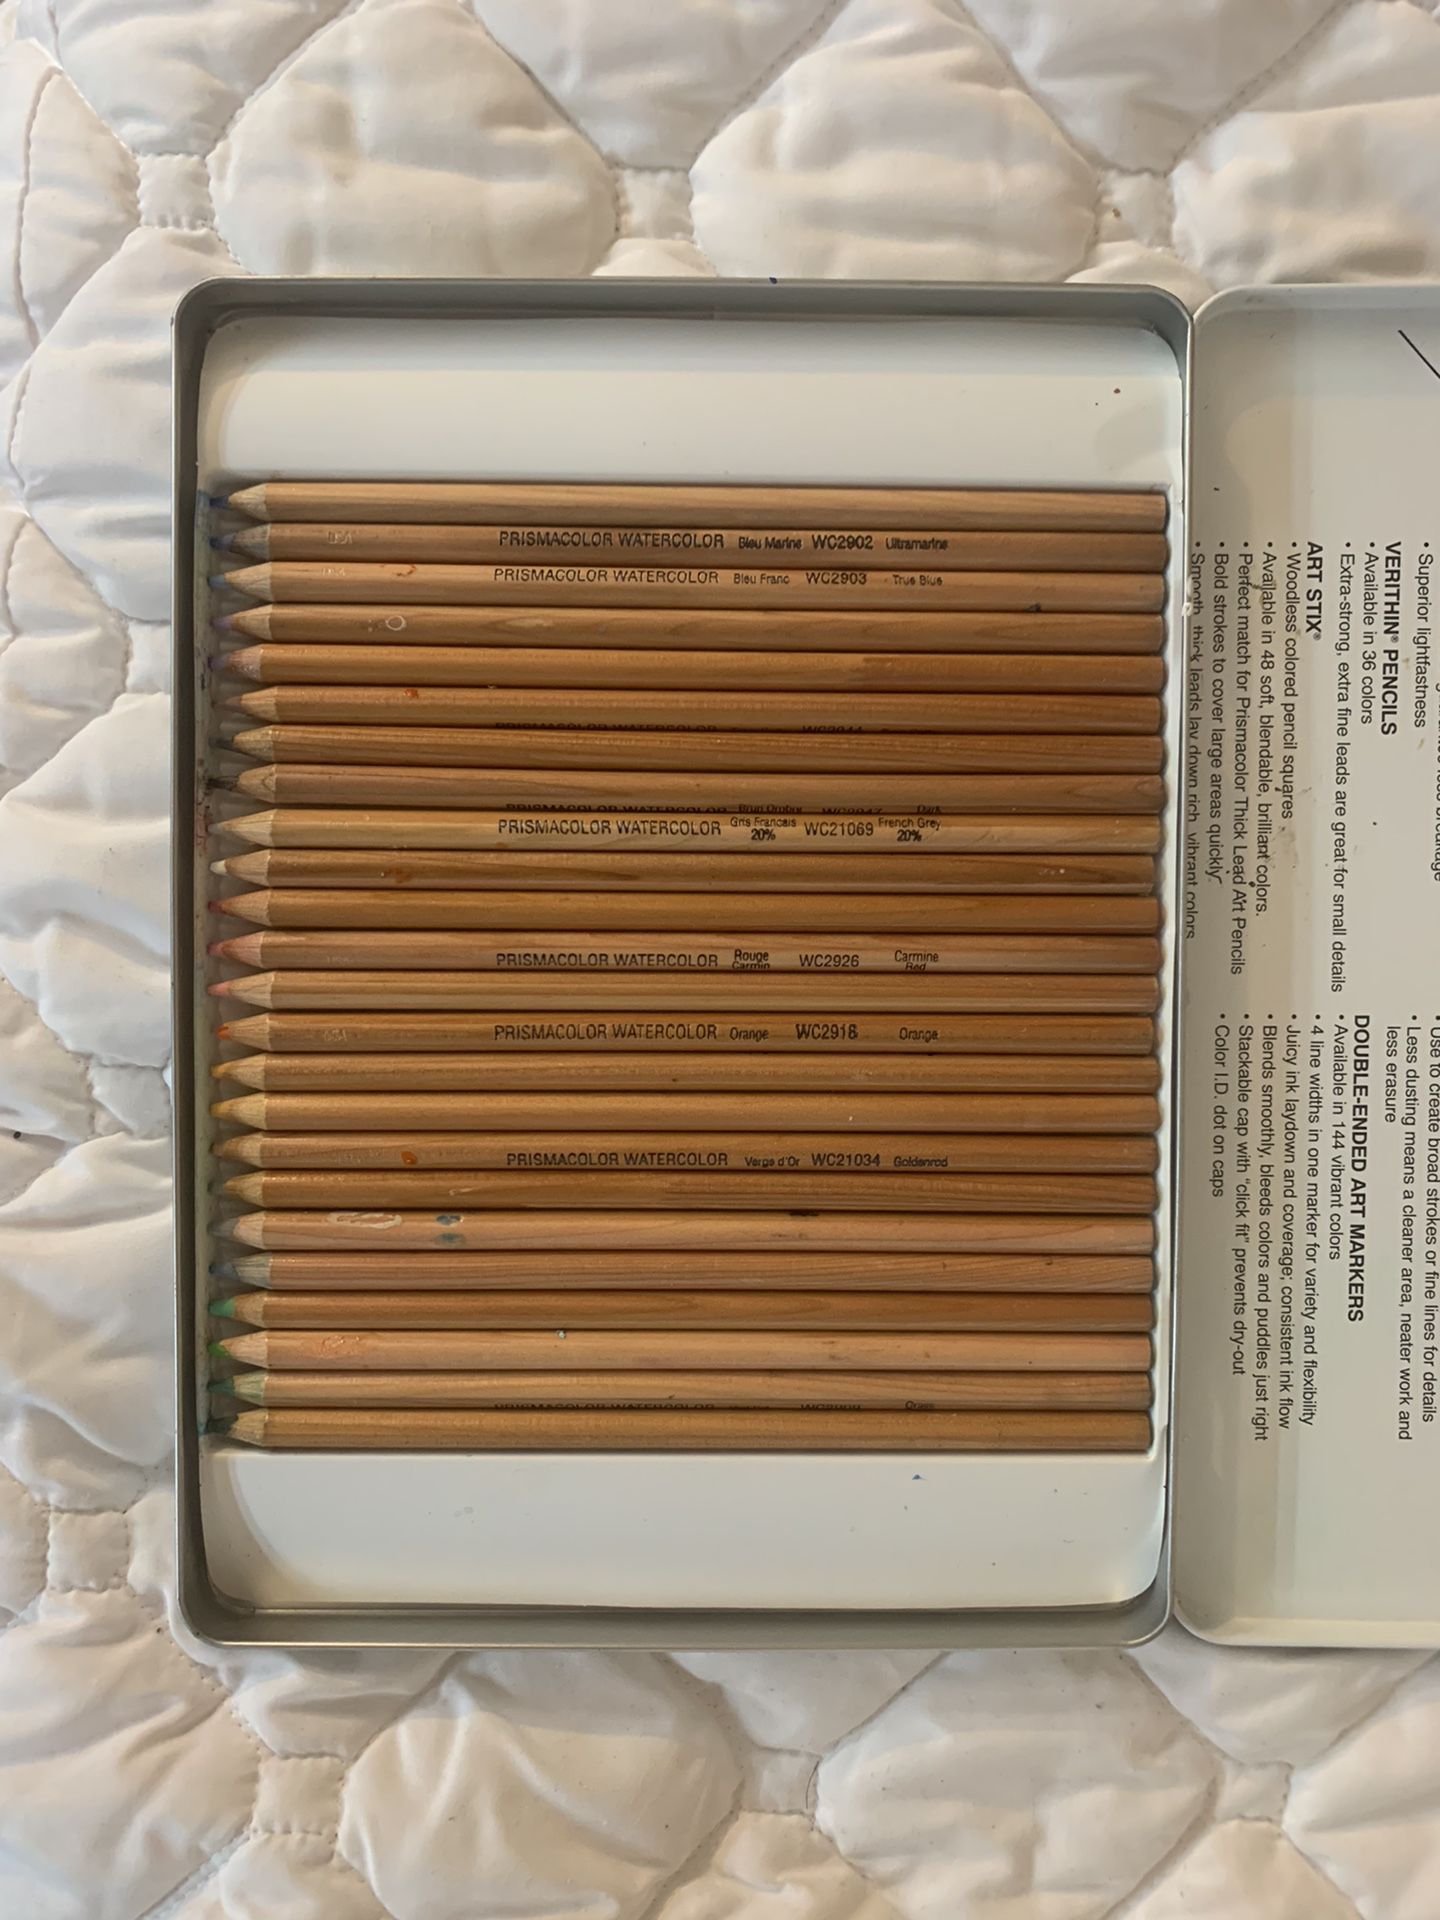 Prismacolor Watercolor Pencils (24 pencils)